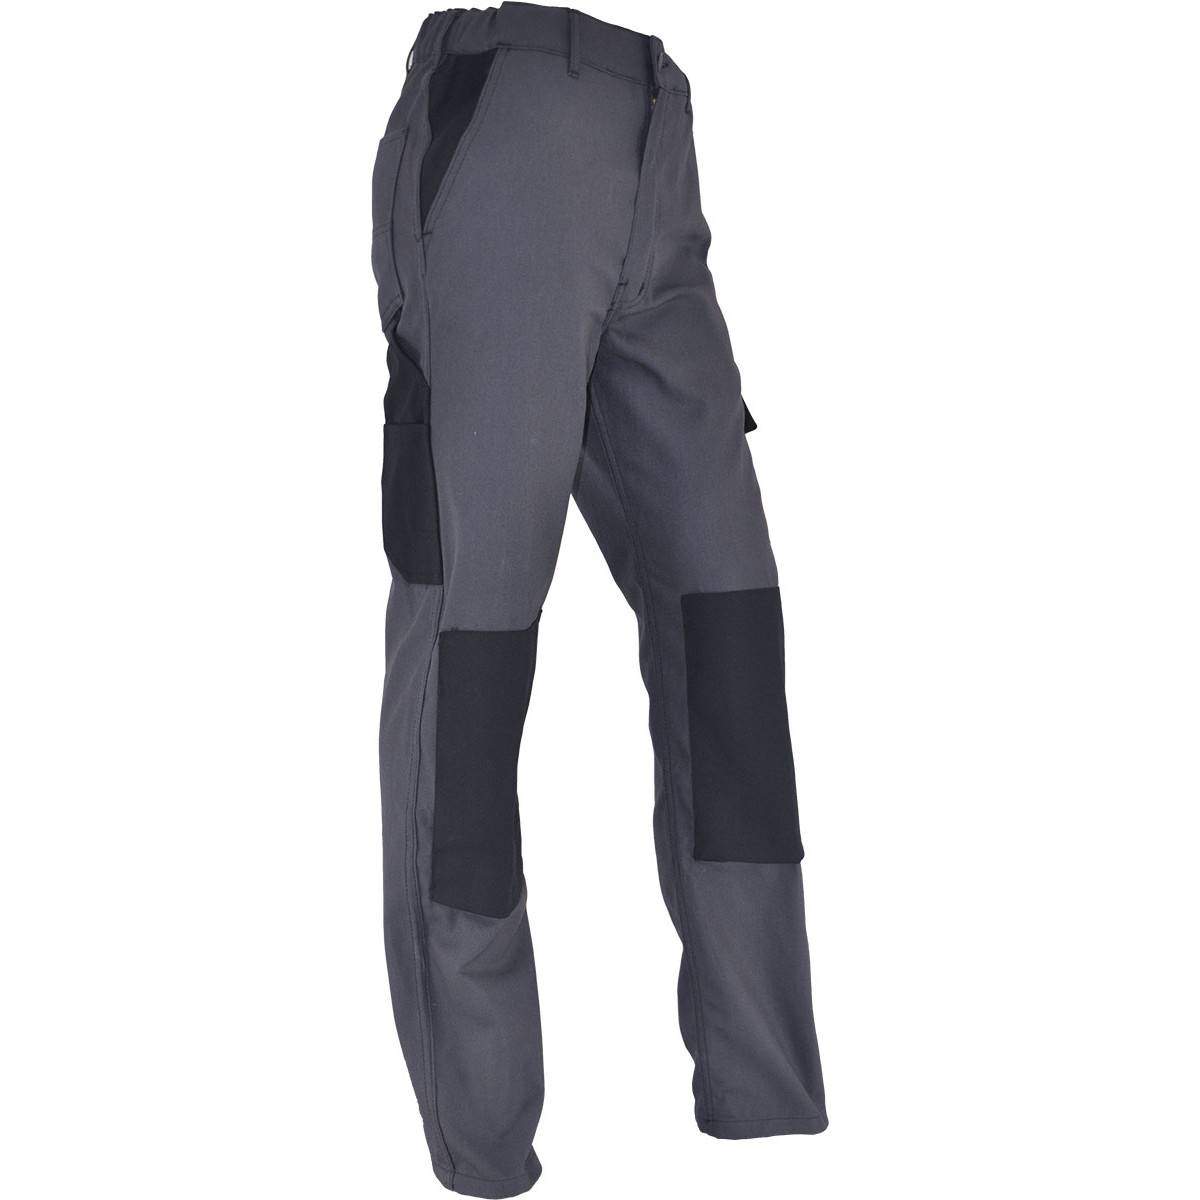 Pantaloni da lavoro PMPC comfort taglia 38, grigio antracite